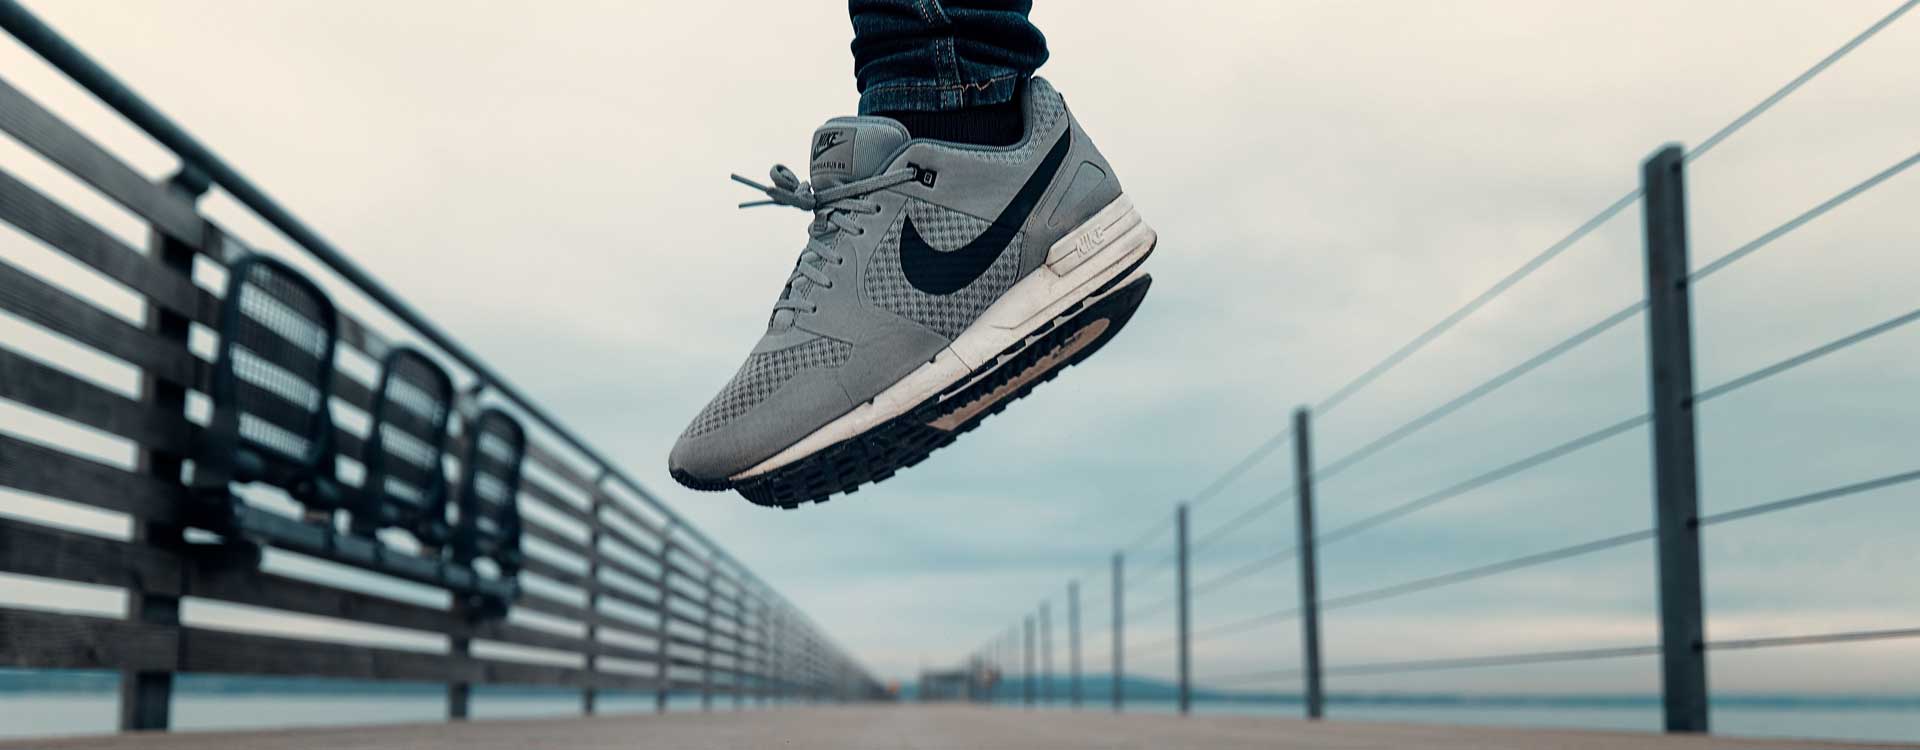 Nike Inc. Läufer mit Nike Schuhen auf einer Brücke